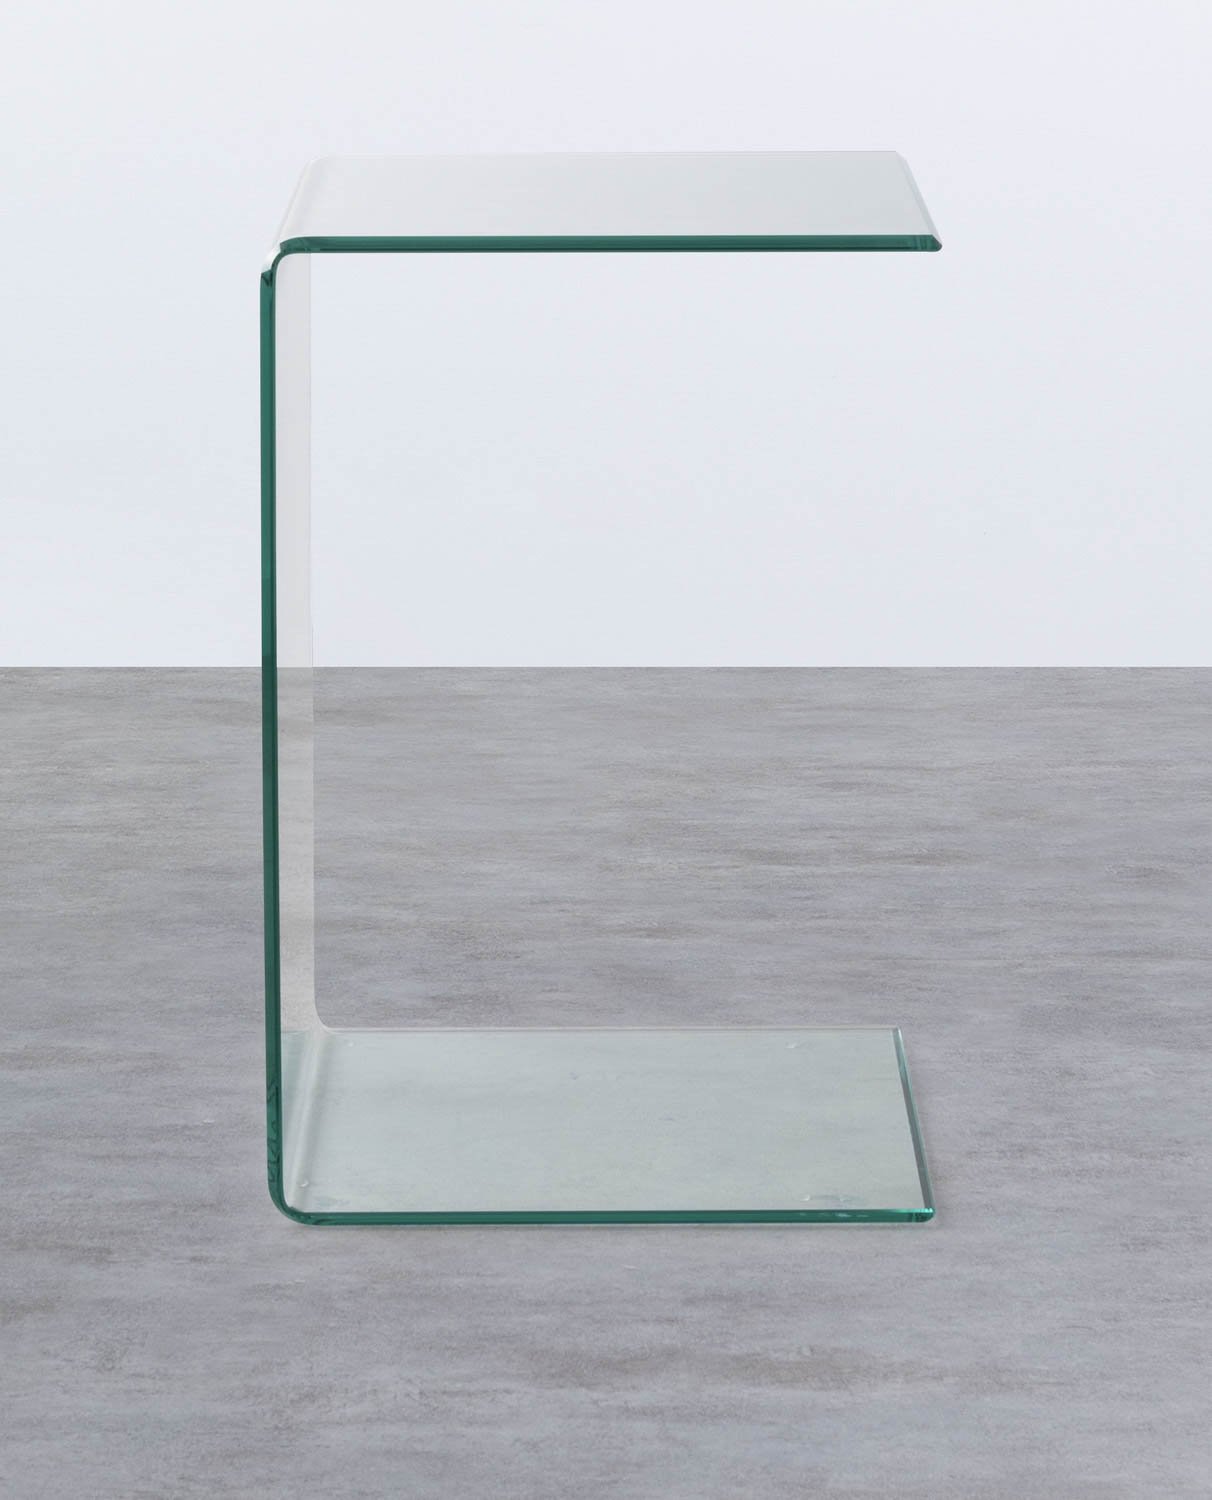 Tavolo Ausiliario Quadrato in Cristallo Temperato (40x40 cm) Elem, immagine della galleria 1